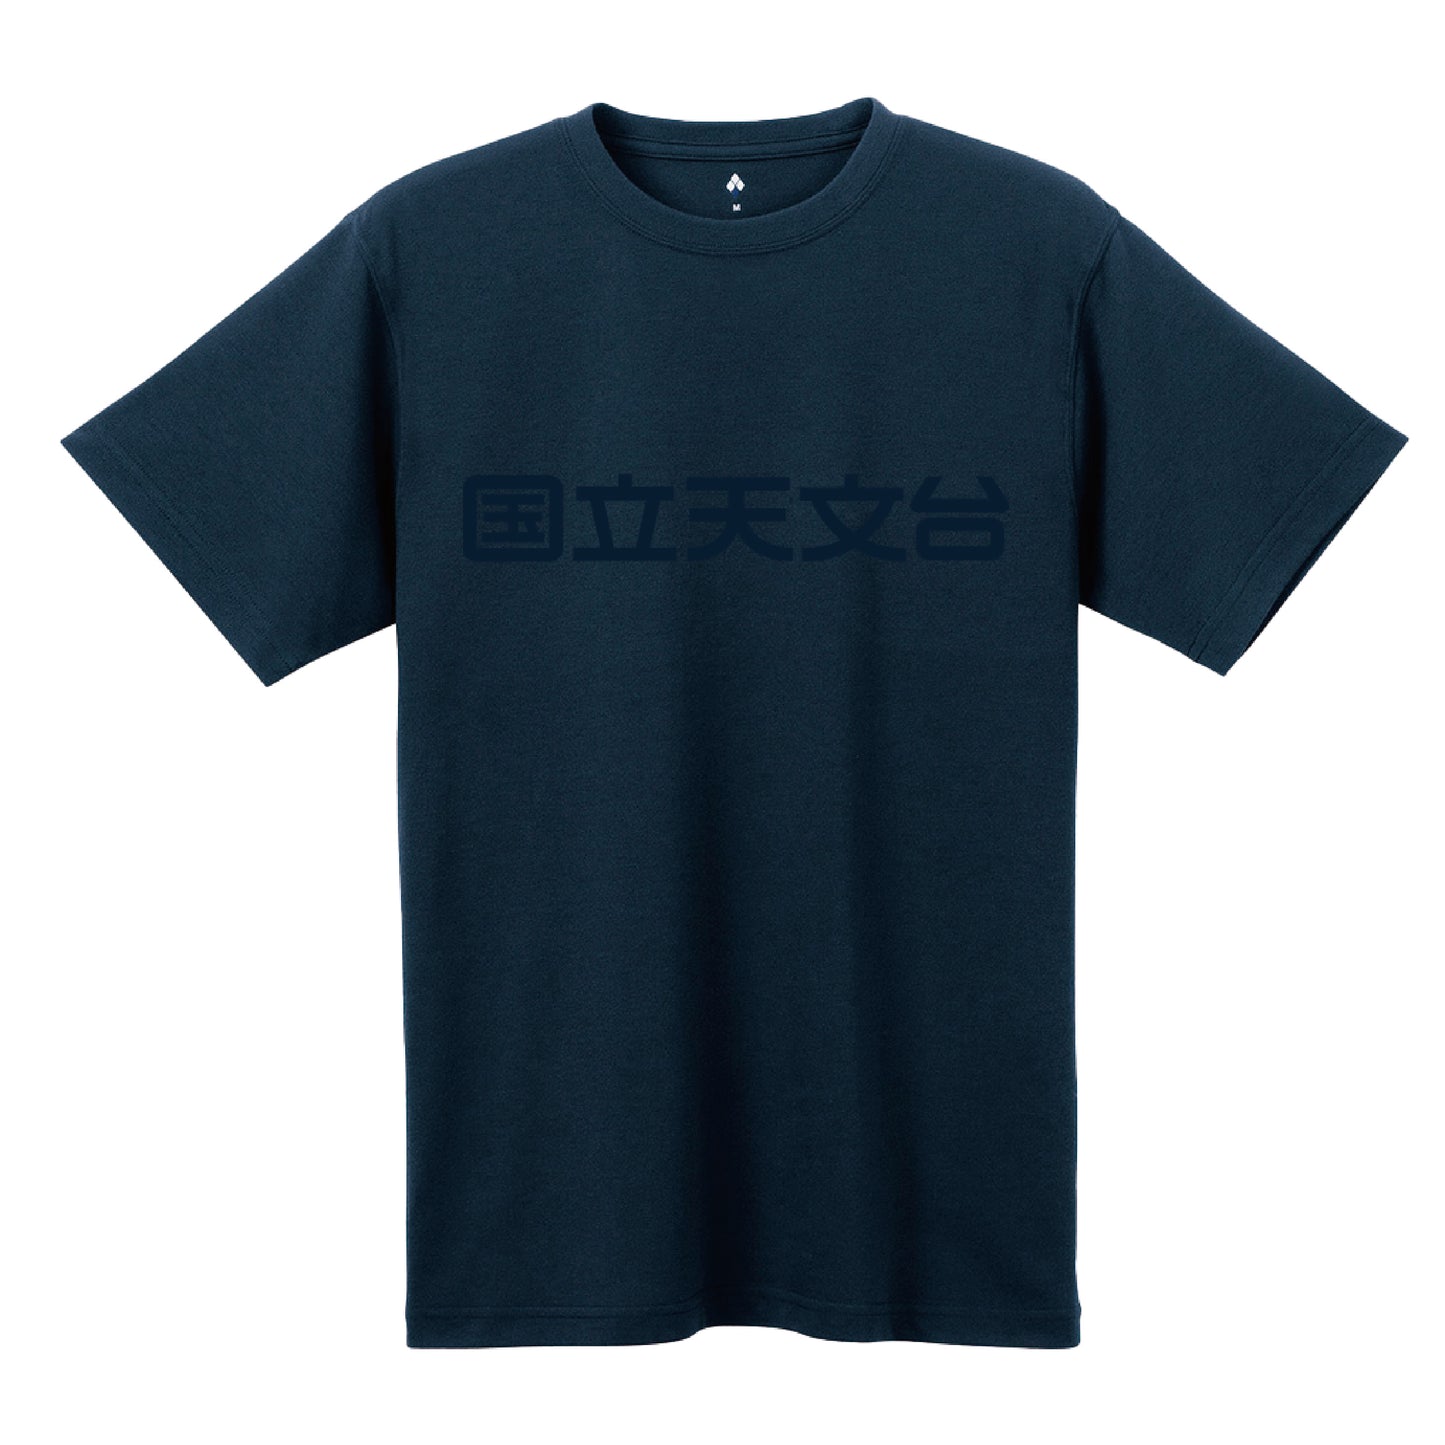 国立天文台 NAOJ漢字 ロゴマーク WIC. Tシャツ ネイビー x ネイビー XL 00